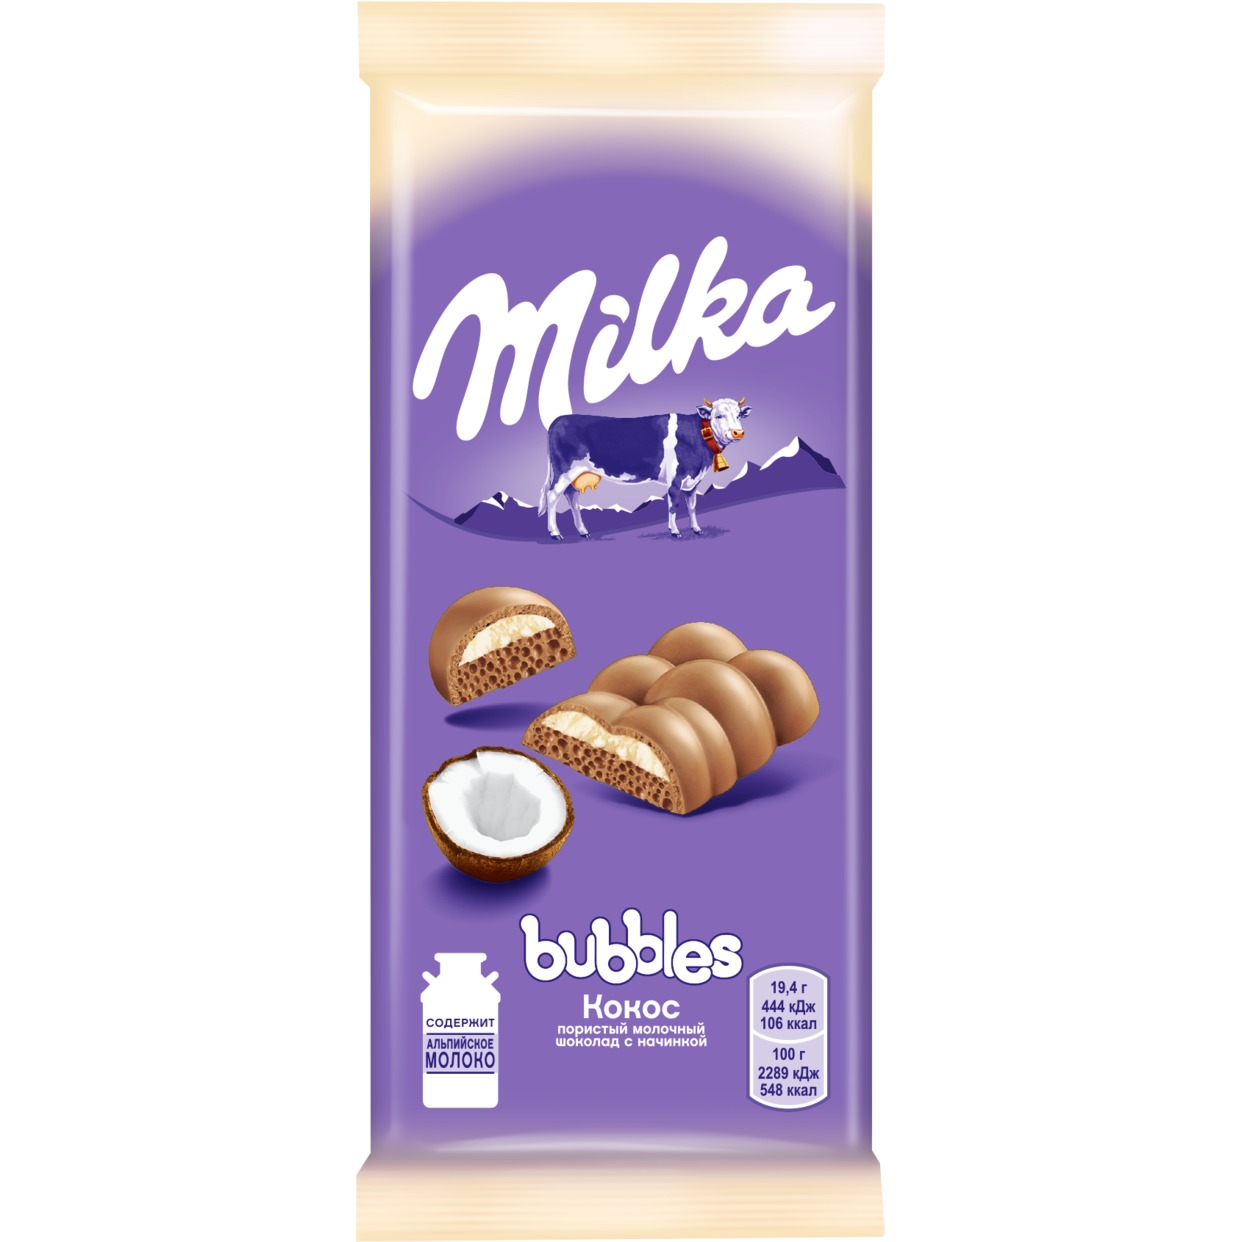 Шоколад Milka Bubbles, кокос, 97 г по акции в Пятерочке